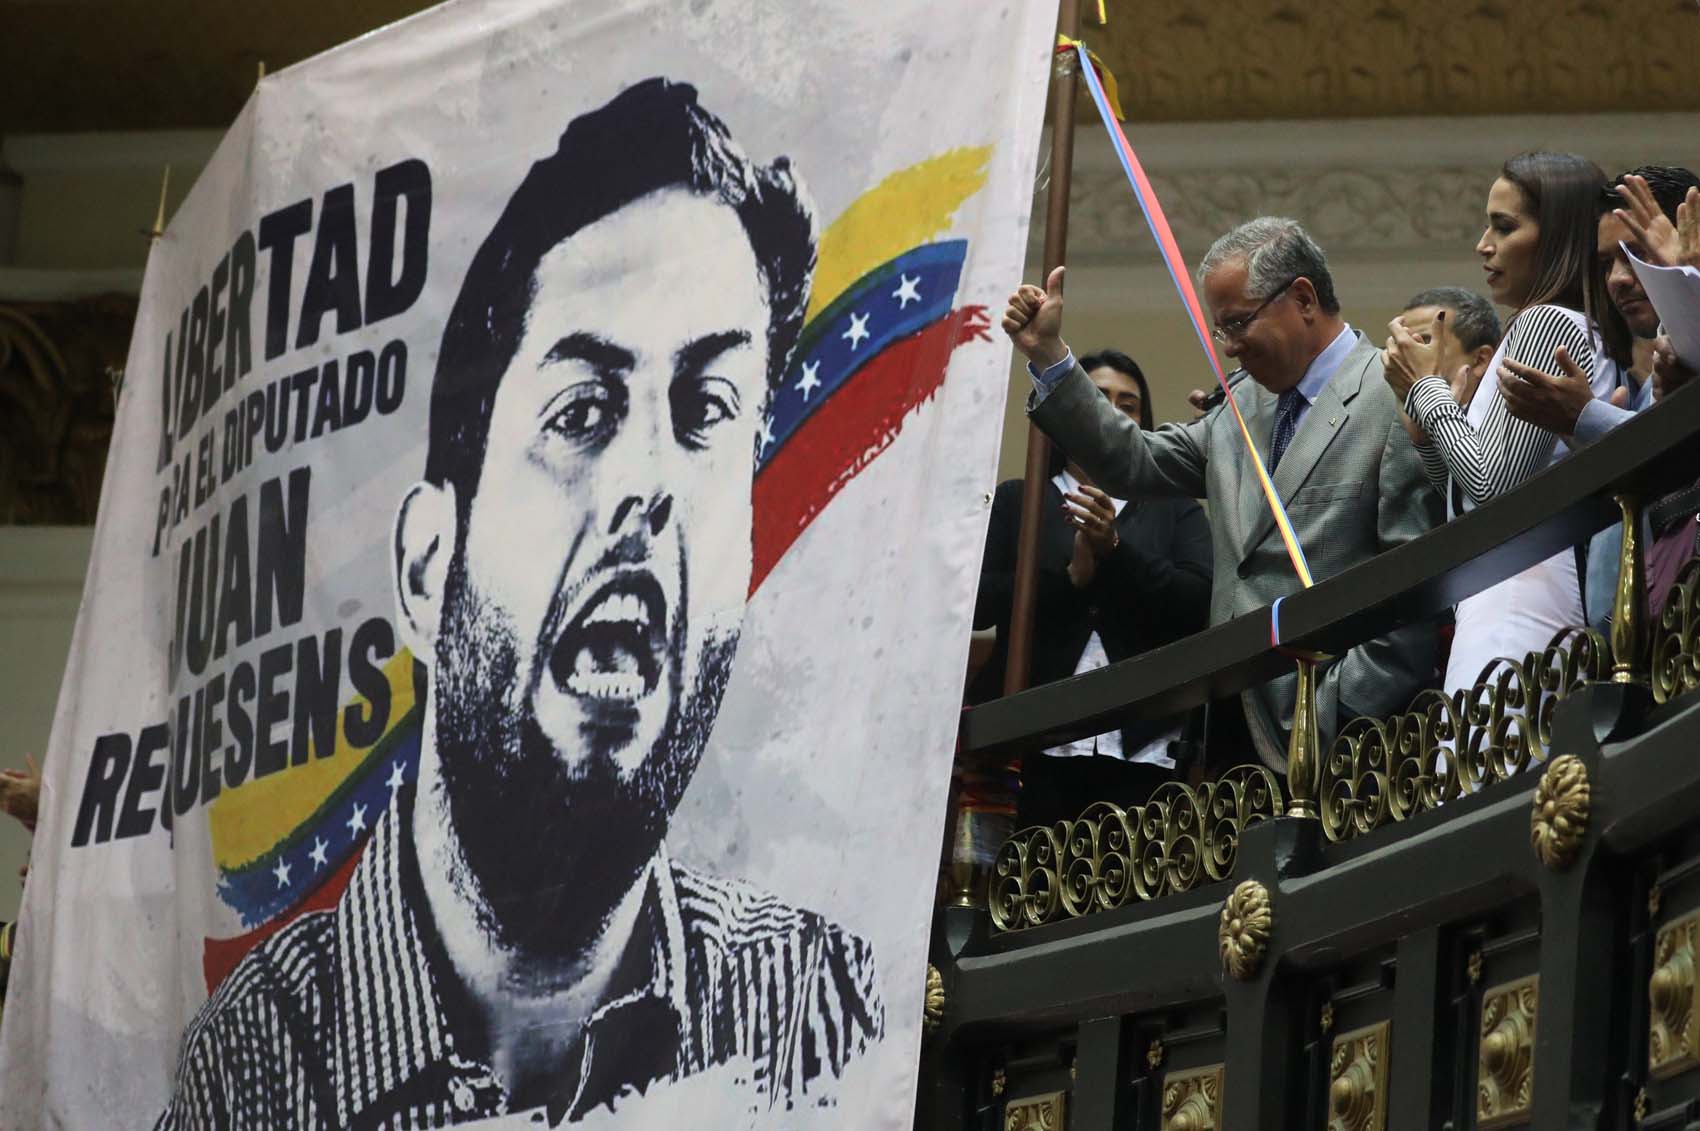 “Requesens debe estar en libertad”: Guaidó alzó la voz en favor del diputado secuestrado